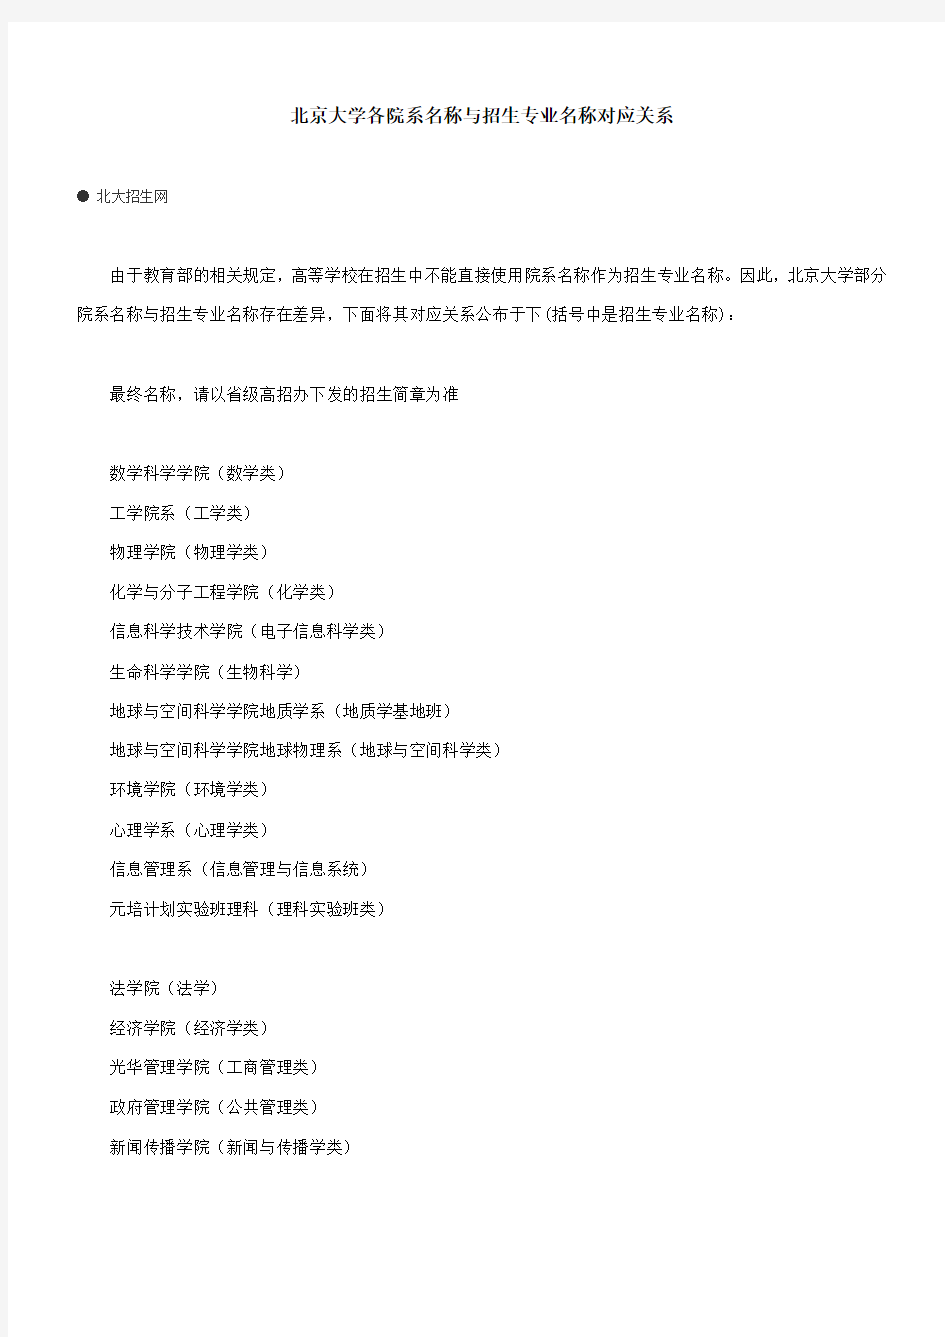 北京大学各院系名称与招生专业名称对应关系